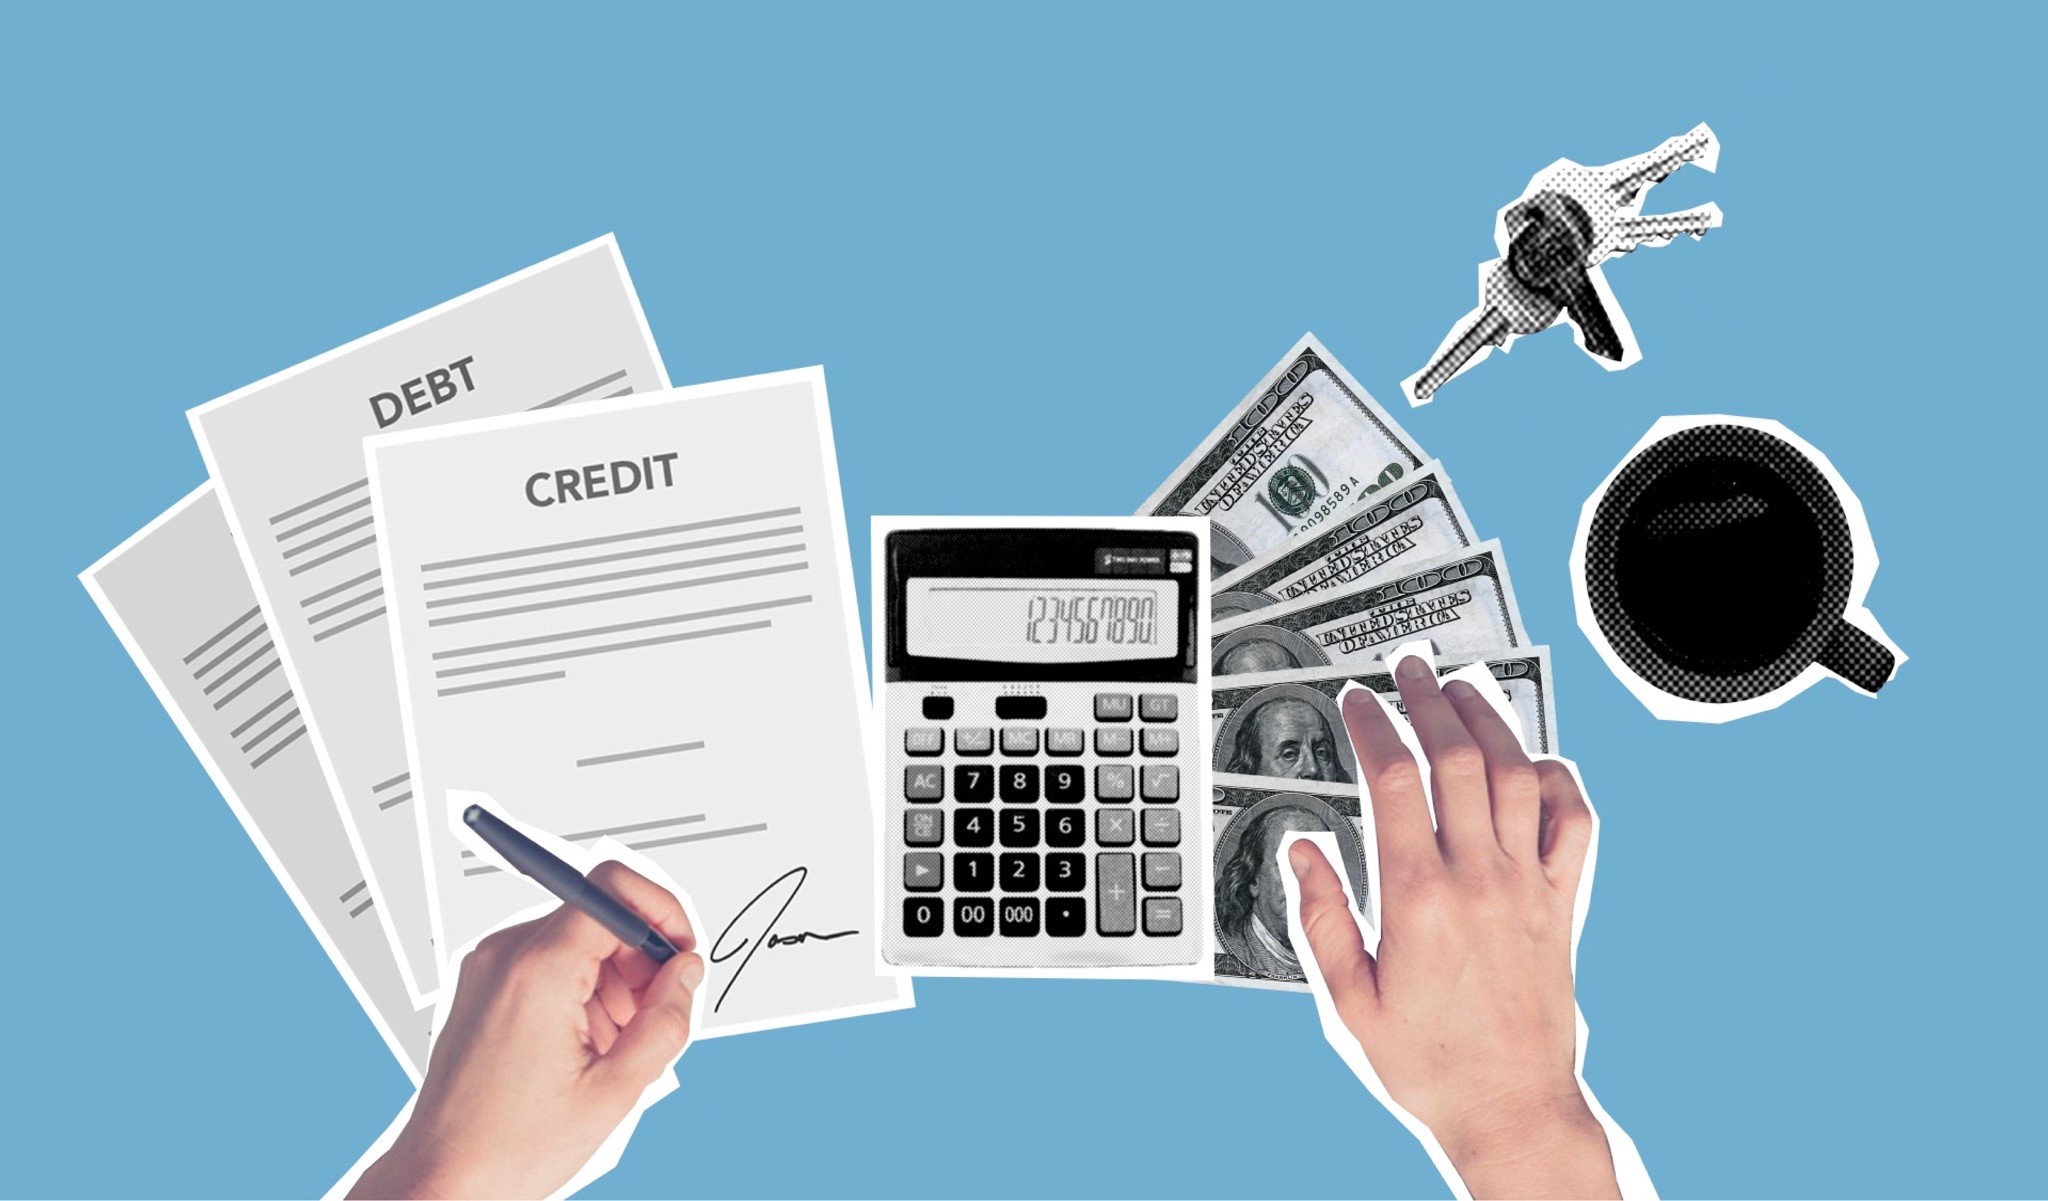 Organiza tus finanzas personales: 3 tips para evitar crisis económicas y salir de deudas